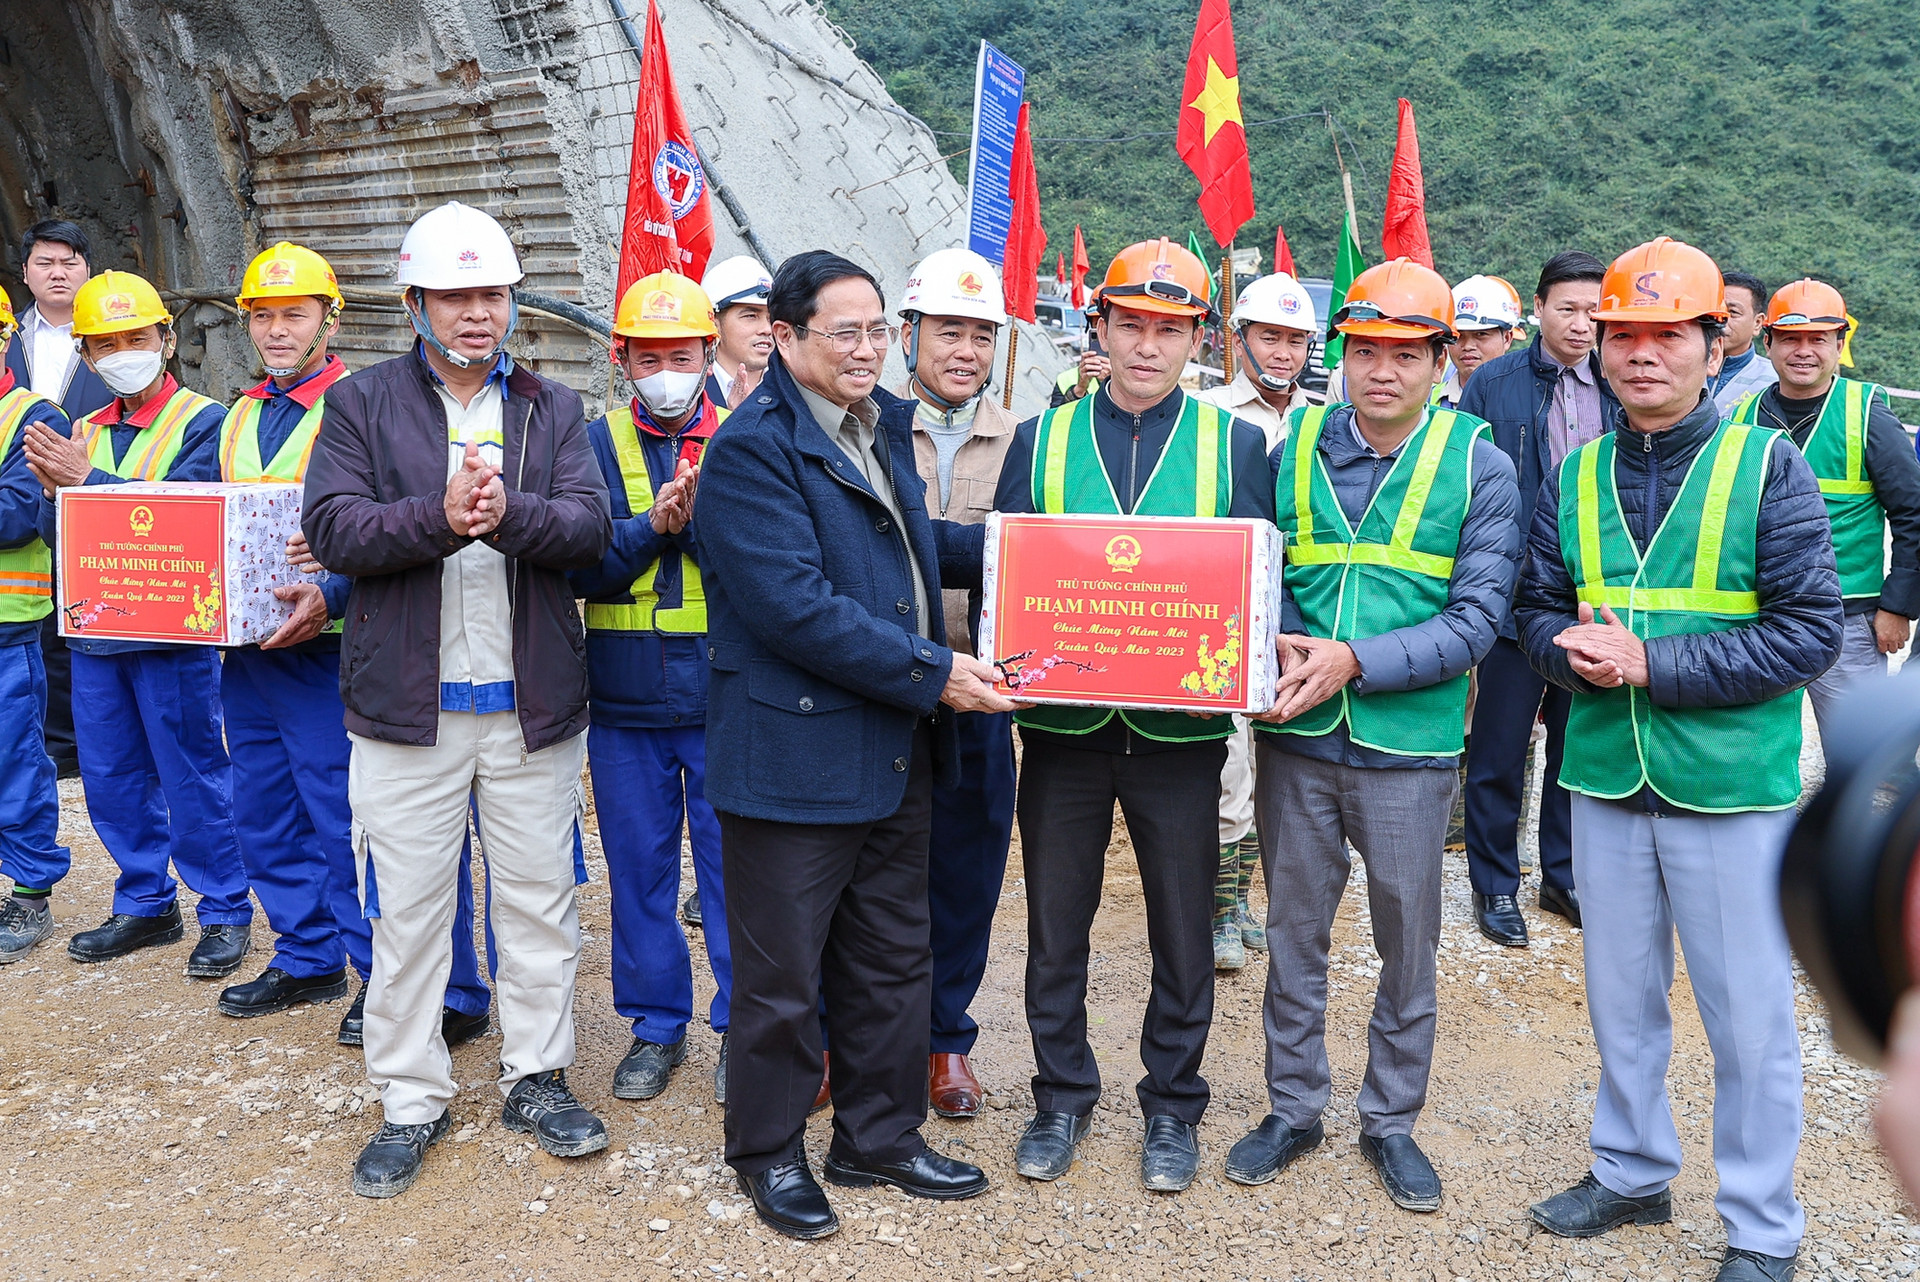 Thủ tướng kiểm tra dự án cao tốc Diễn Châu-Bãi Vọt, thị sát thi công hầm Thần Vũ - Ảnh 6.